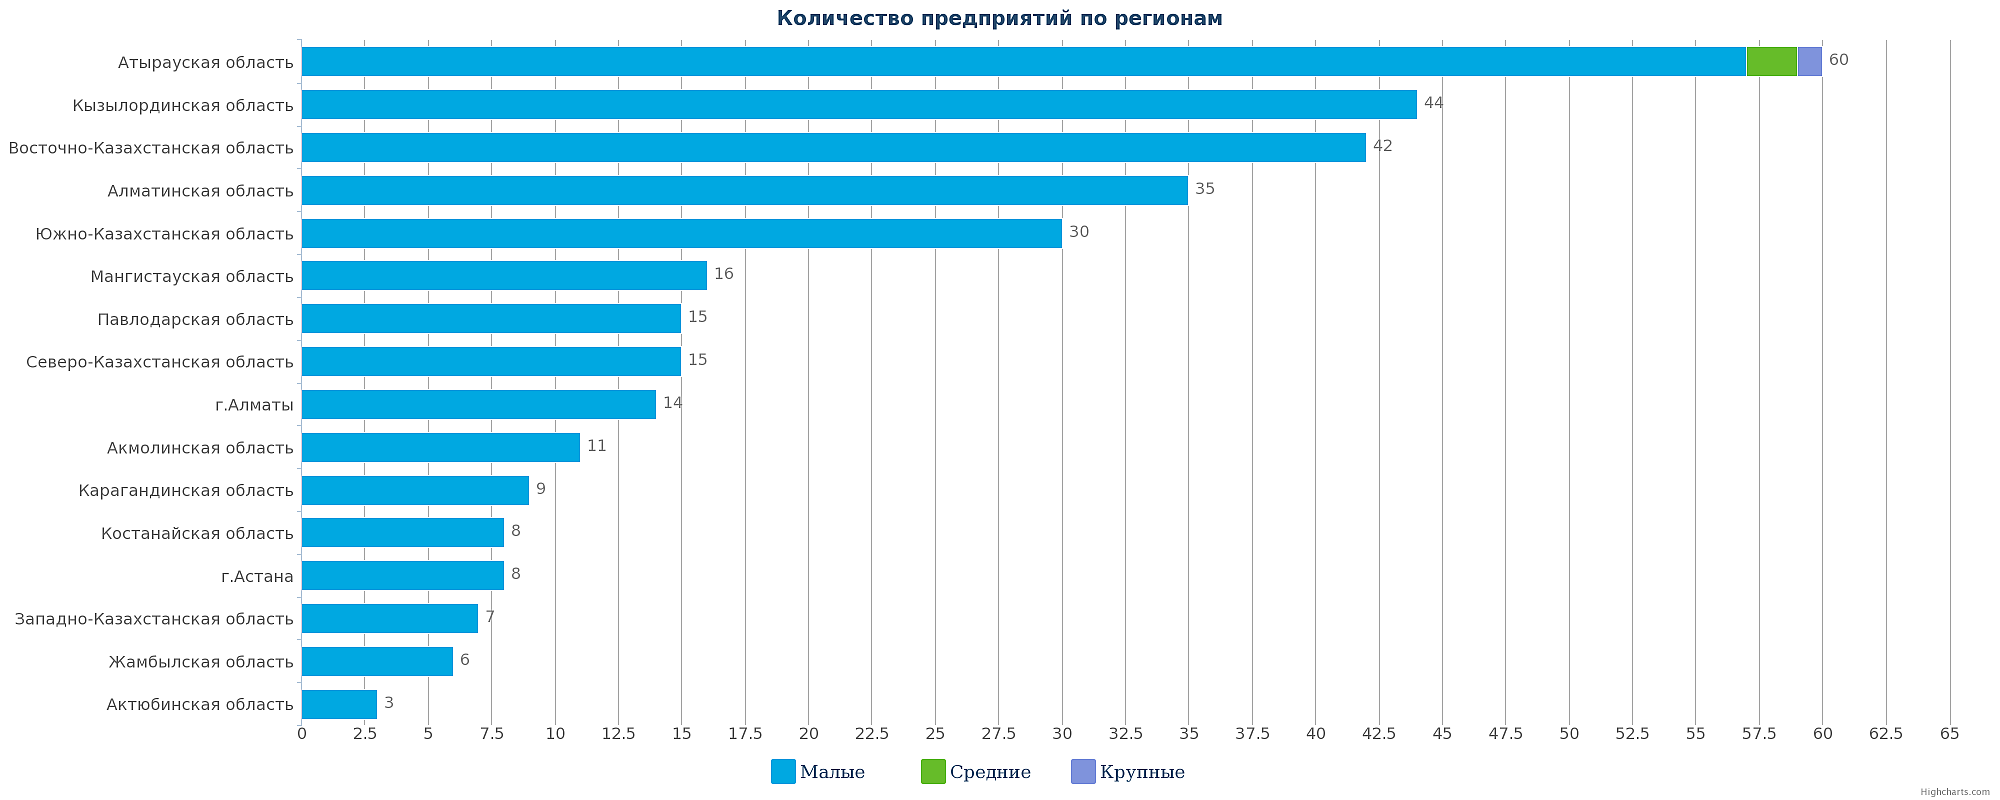 Количество рыболовных компаний Казахстана по регионам на 27.02.2017